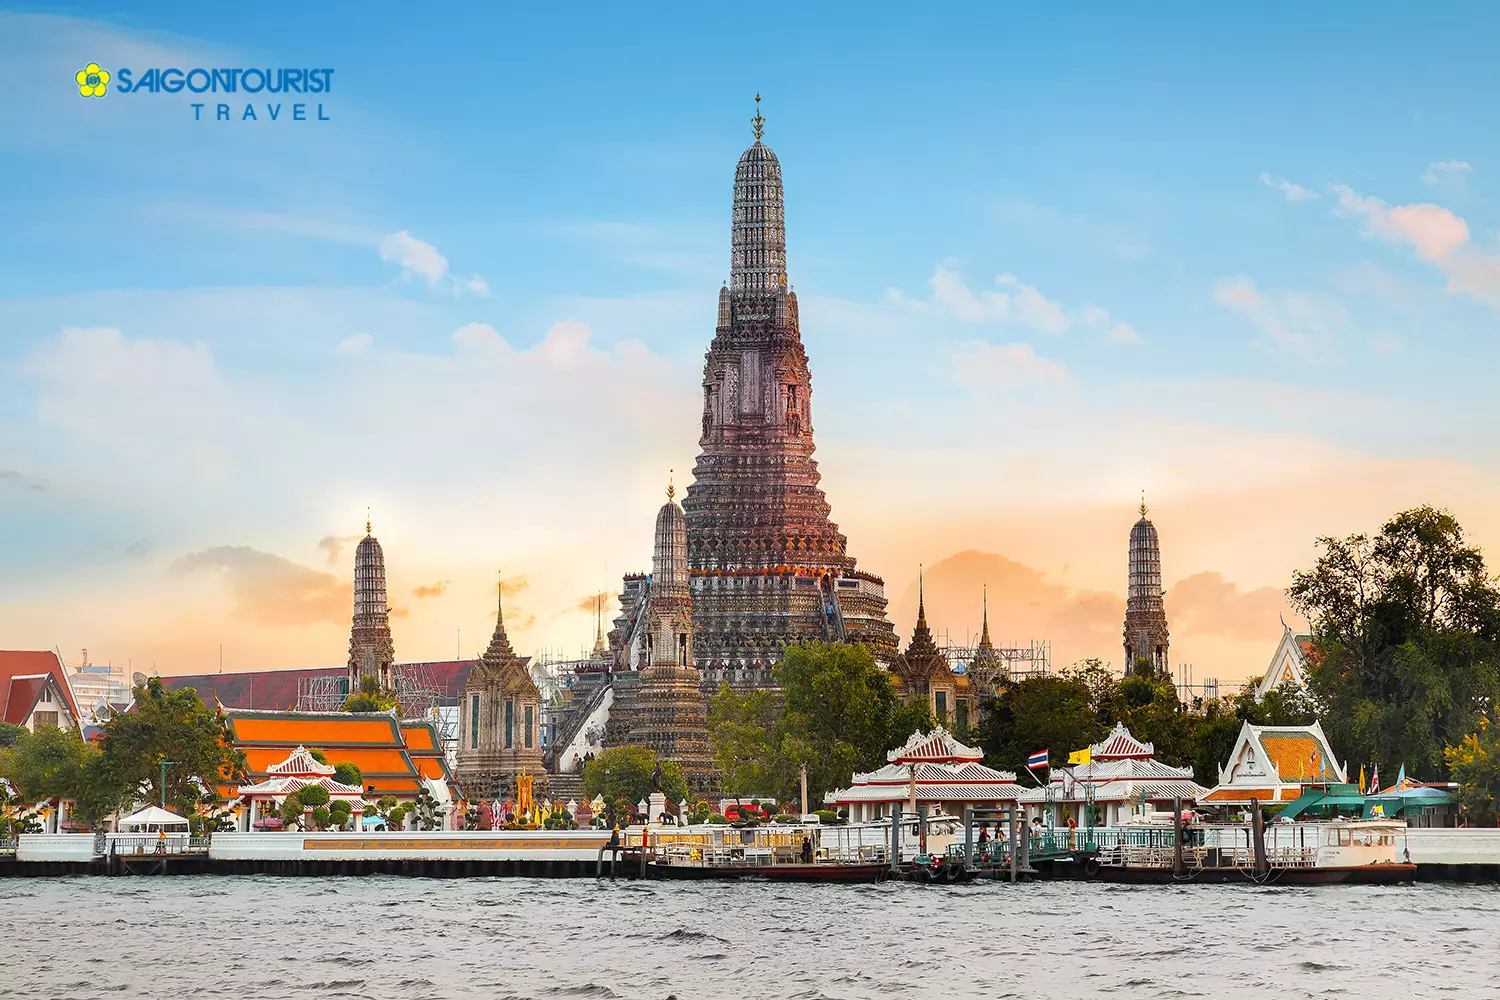 Chùa Bình Minh “Wat Arun”